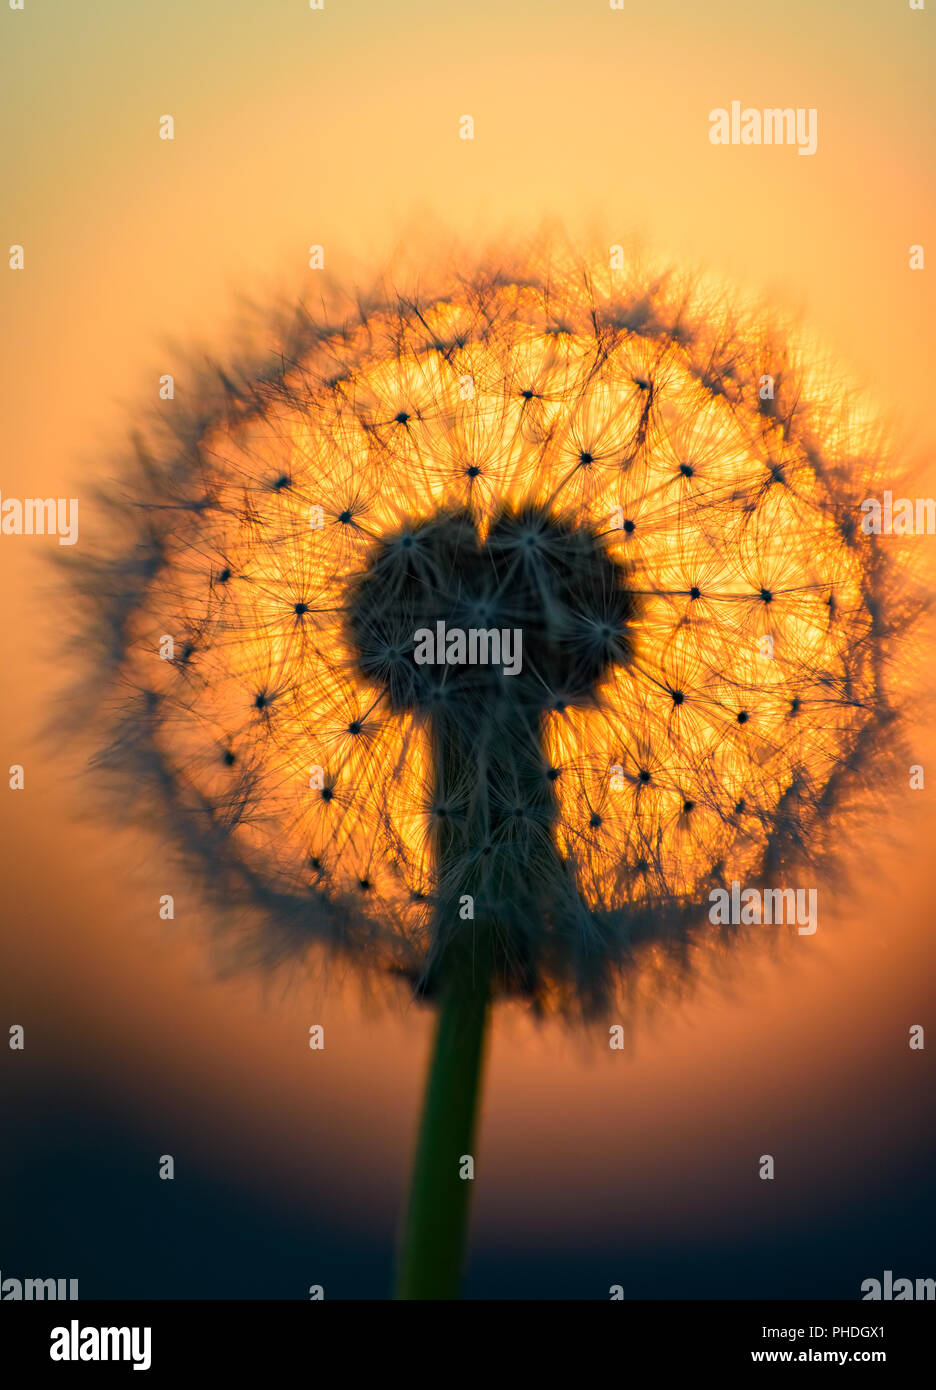 dandelion flower in the sun Stock Photo